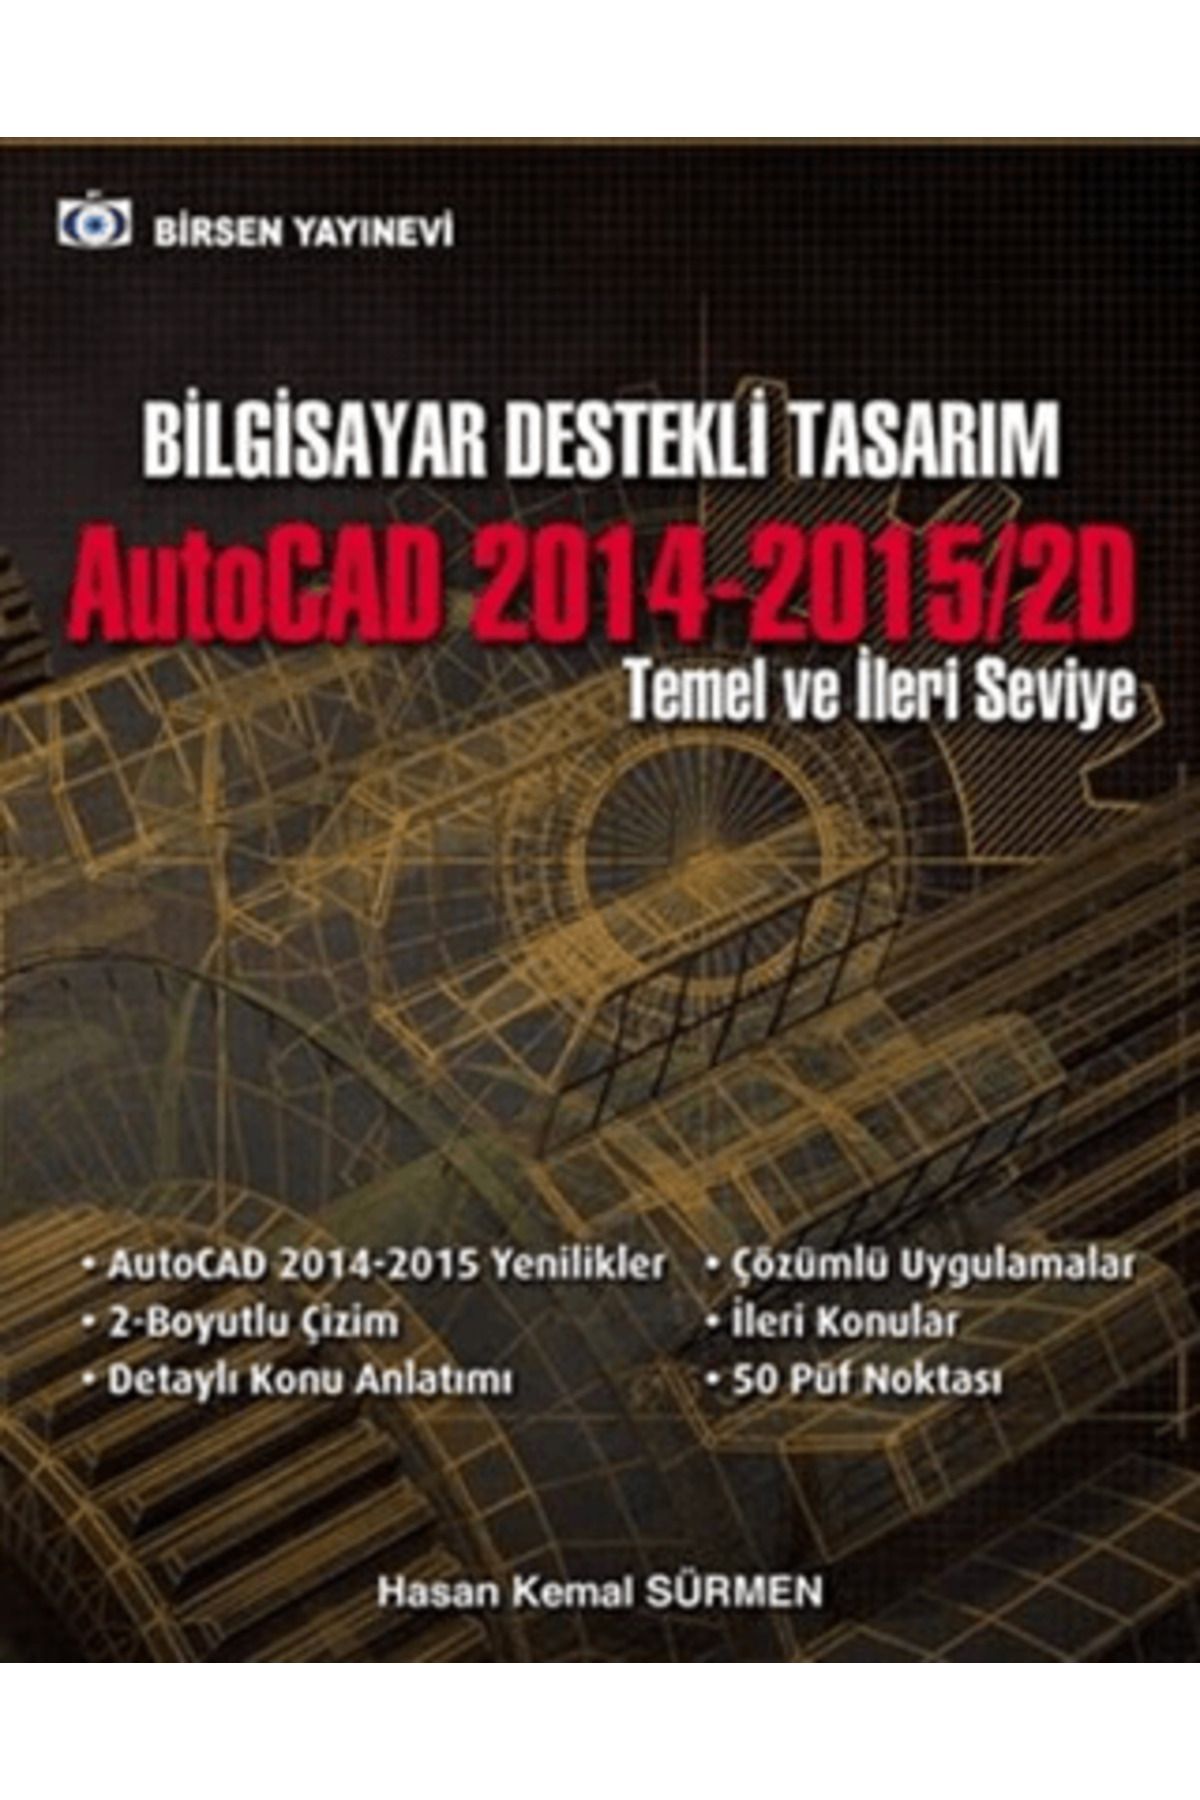 Birsen Yayınevi Bilgisayar Destekli Tasarım AutoCAD 2014-2015/2D